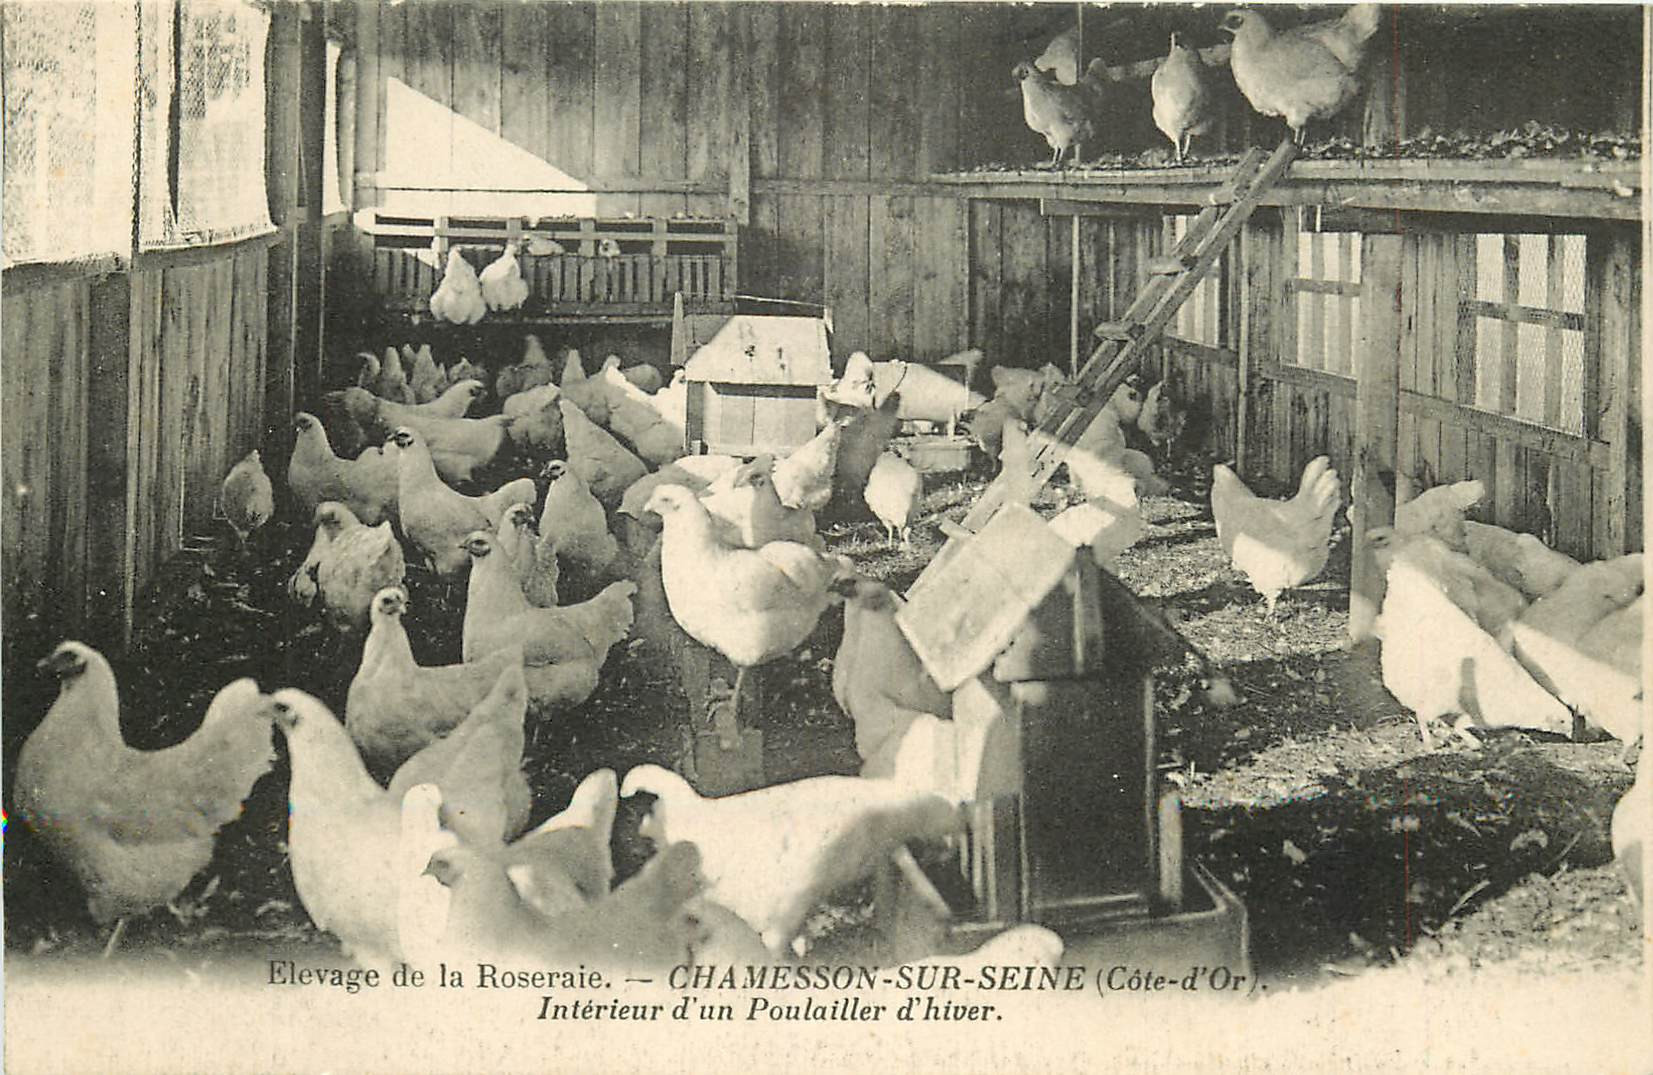 WW 21 CHAMESSON-SUR-SEINE. Un Poulailler d'hiver avec élevage de la Roseraie